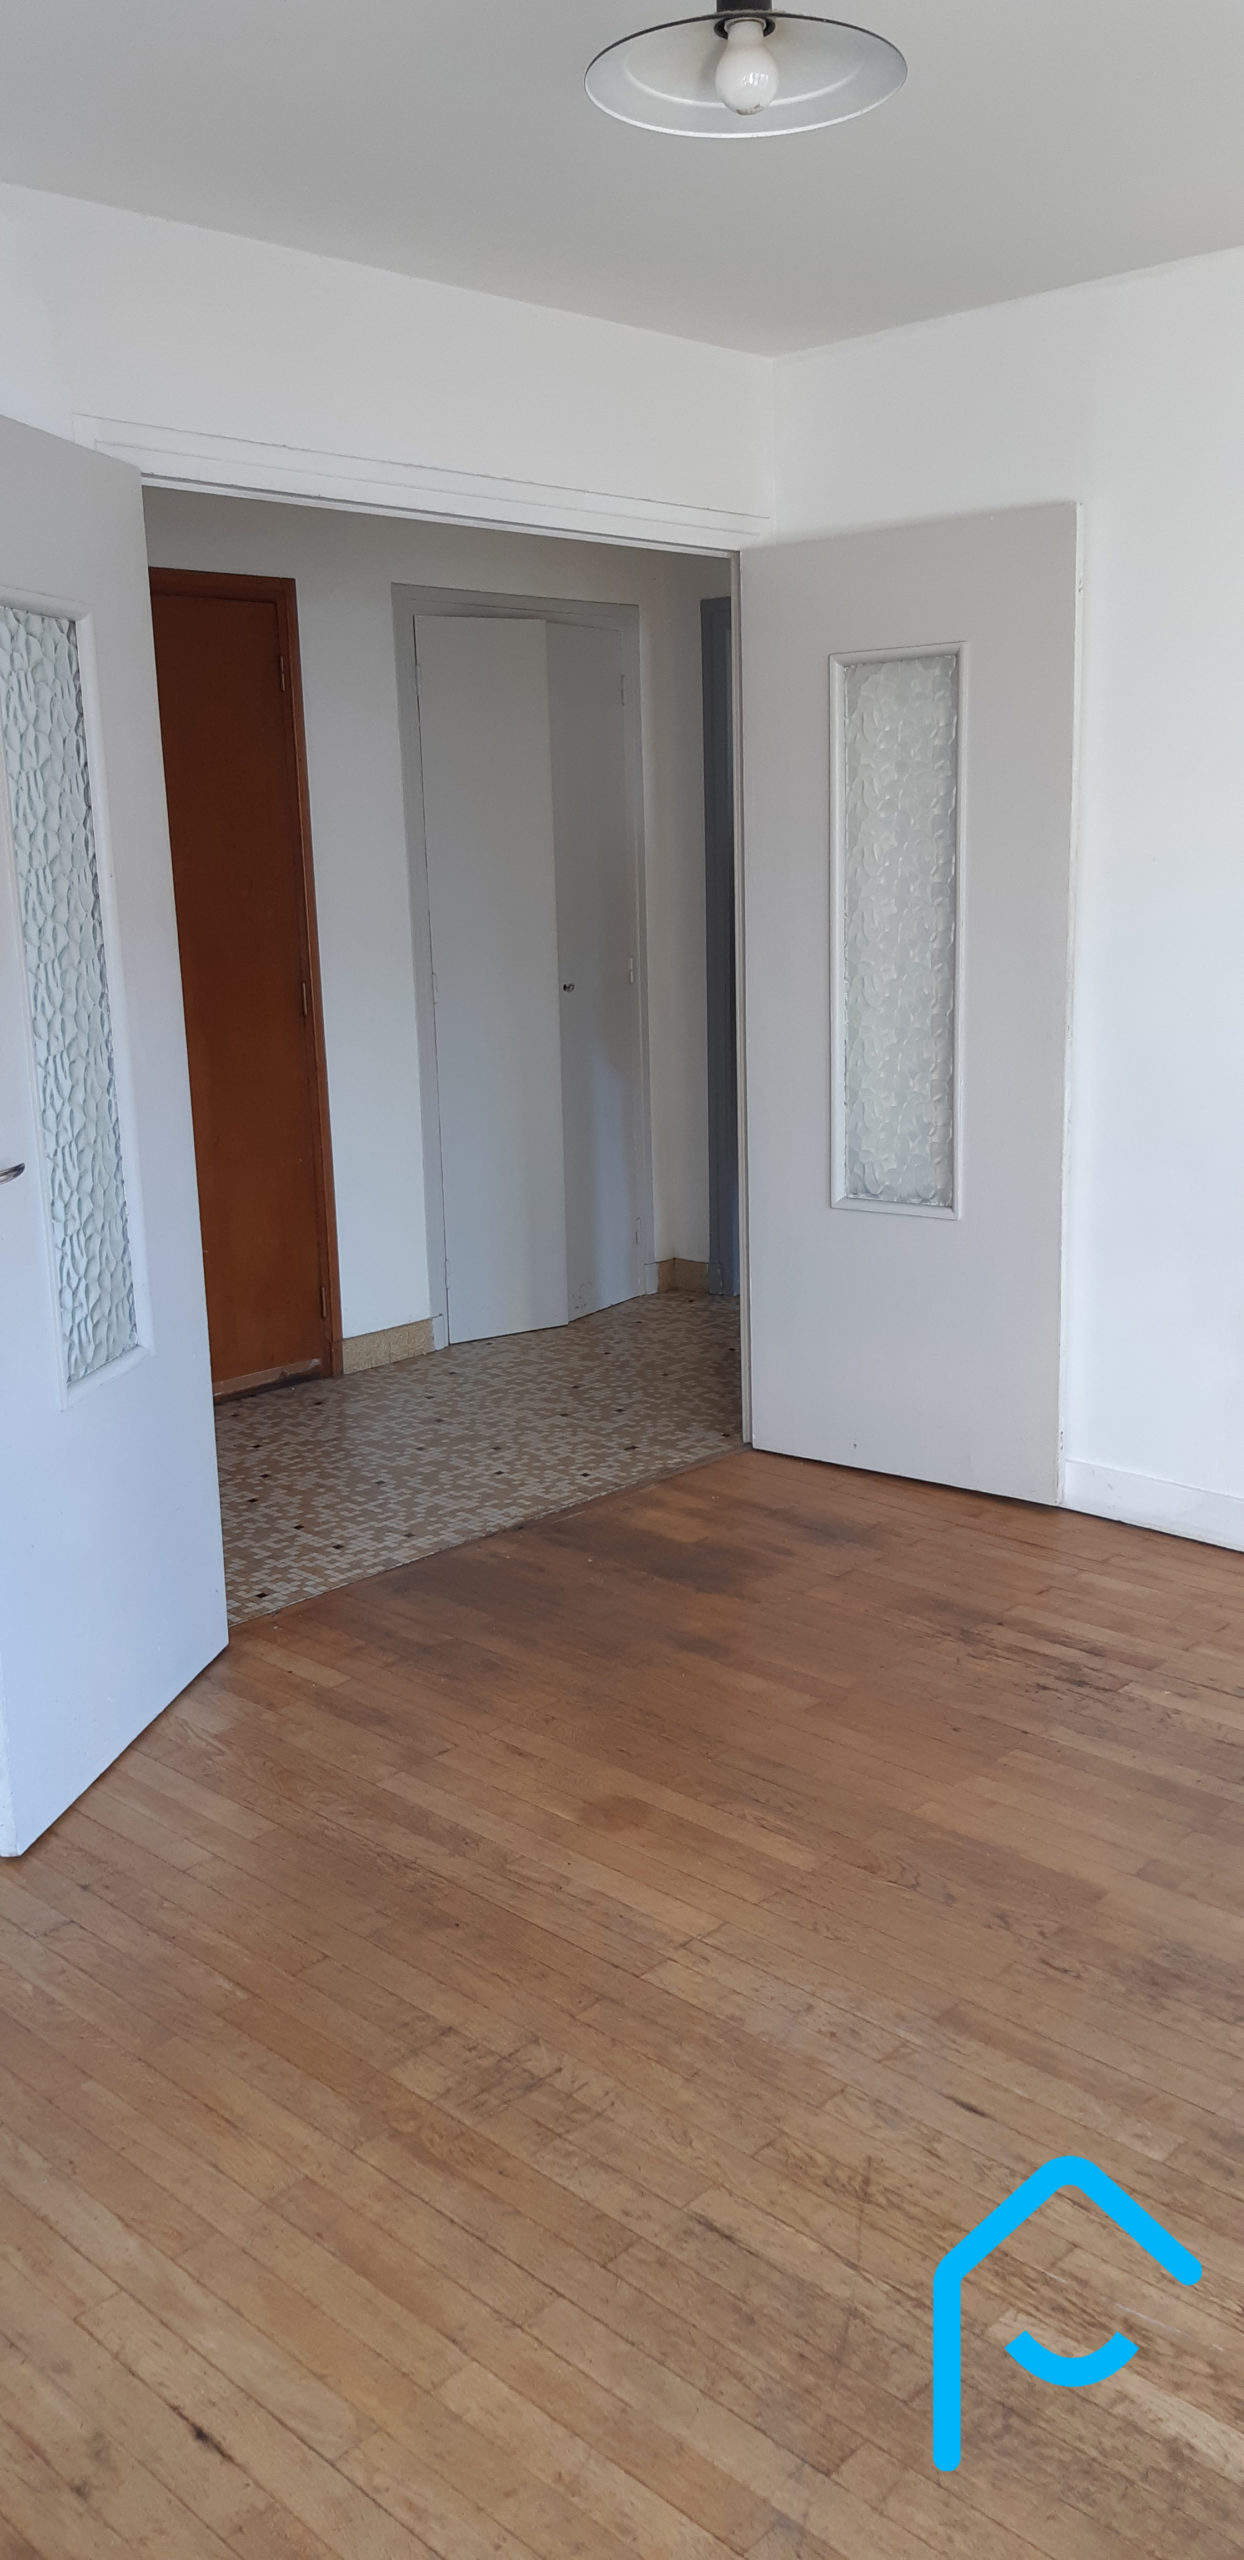 A vendre appartement Chambéry Savoie T3 avec cave lumineux vue 7